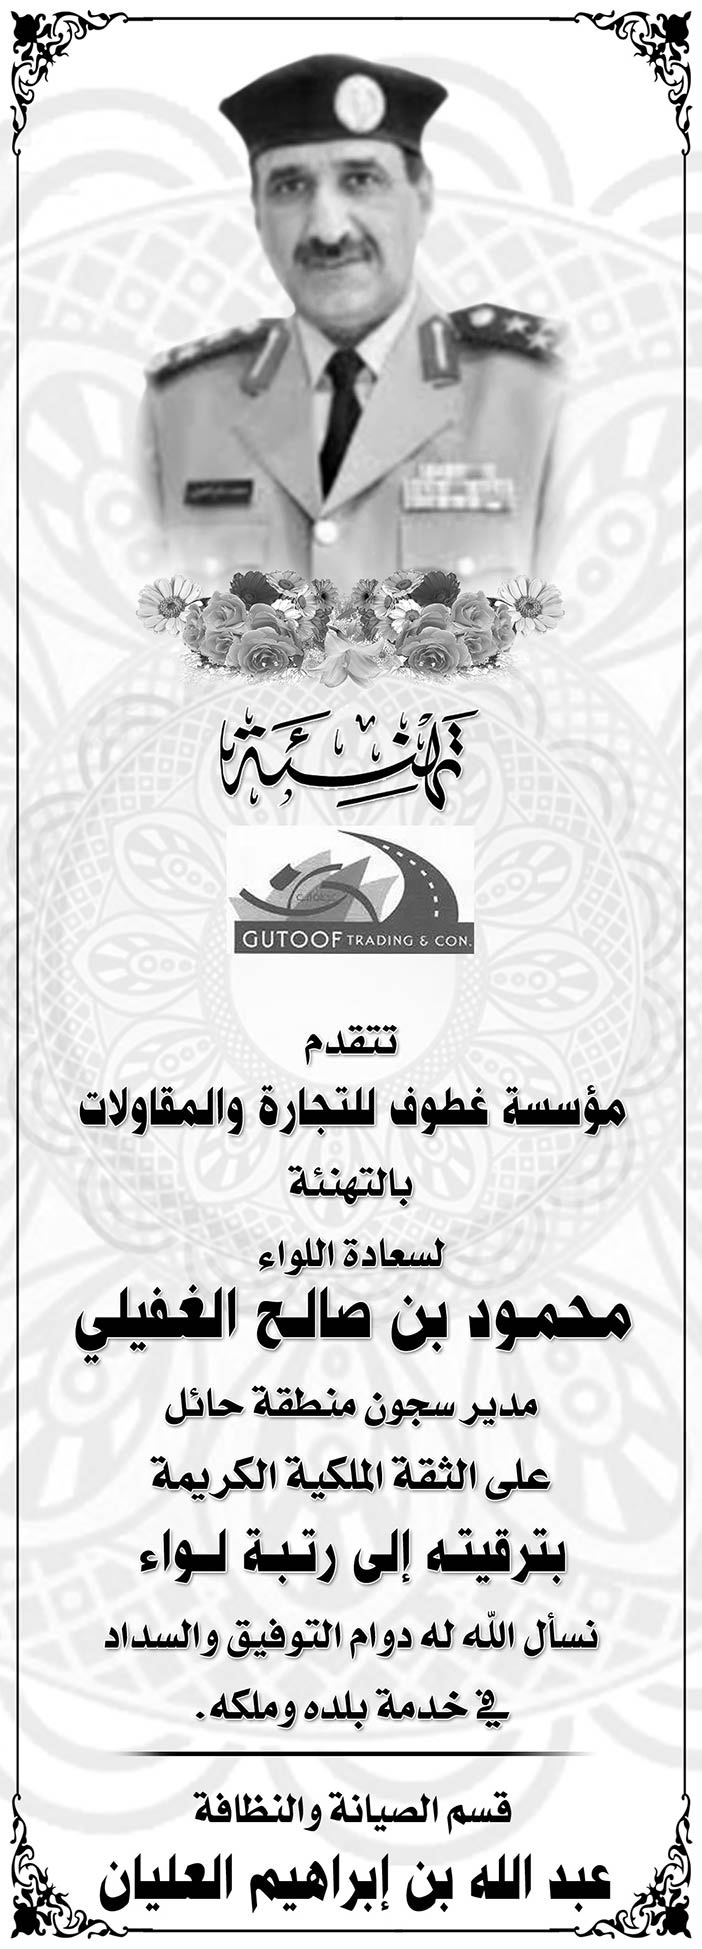 تهنئة مؤسسة غطوف للتجارة والمقاولات لسعادة اللواء محمود بن صالح الغفيلي 